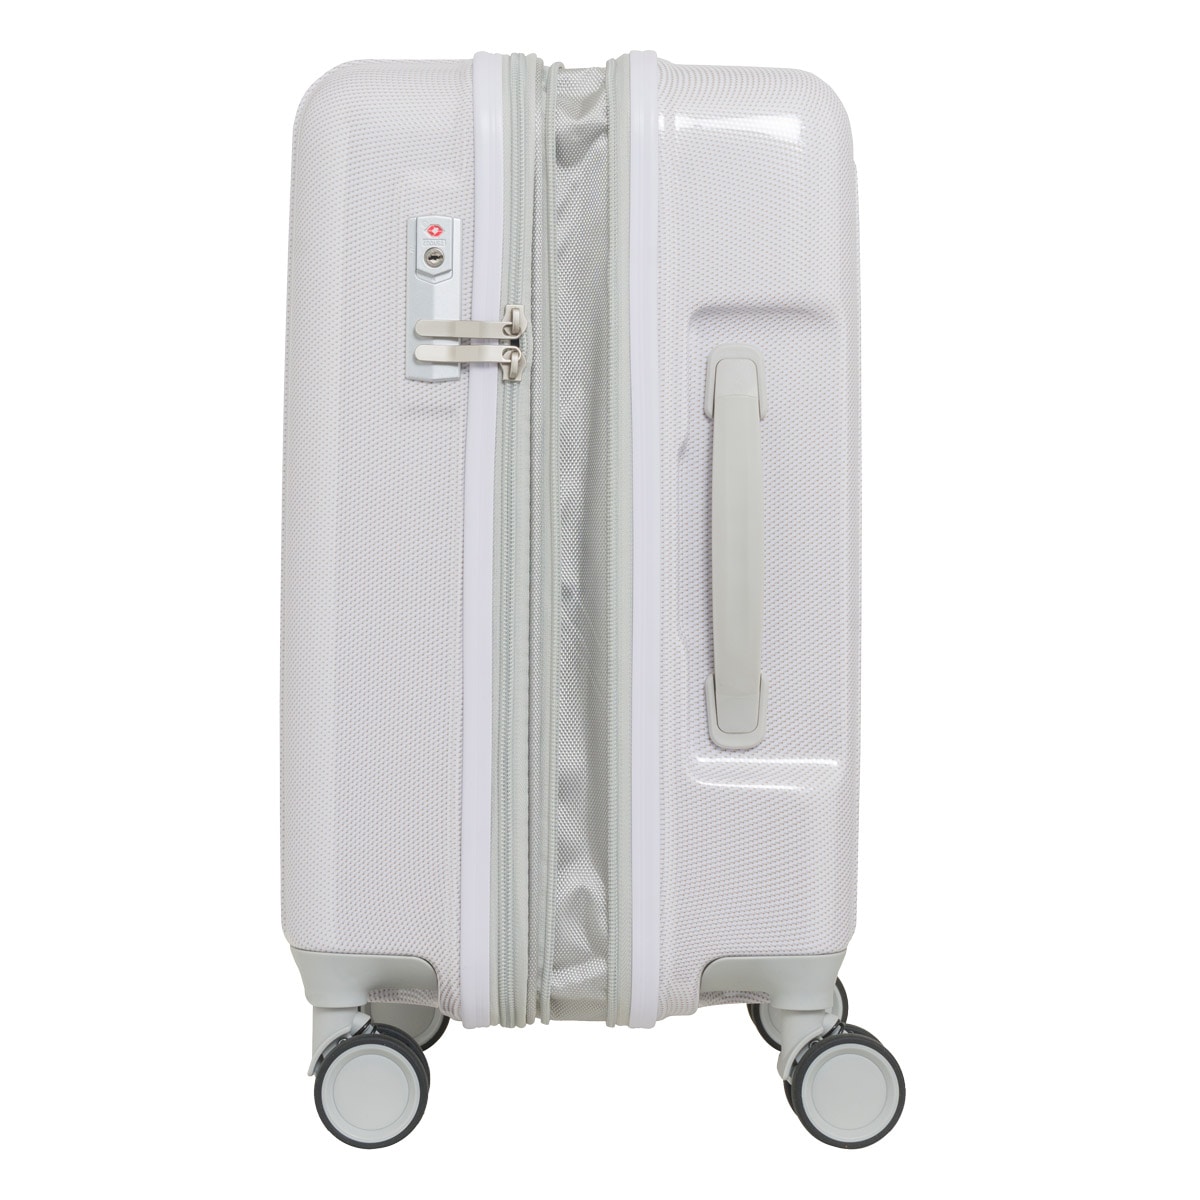 アウトドアプロダクツ スーツケース 44L 53cm 3.3kg OD-0840-48